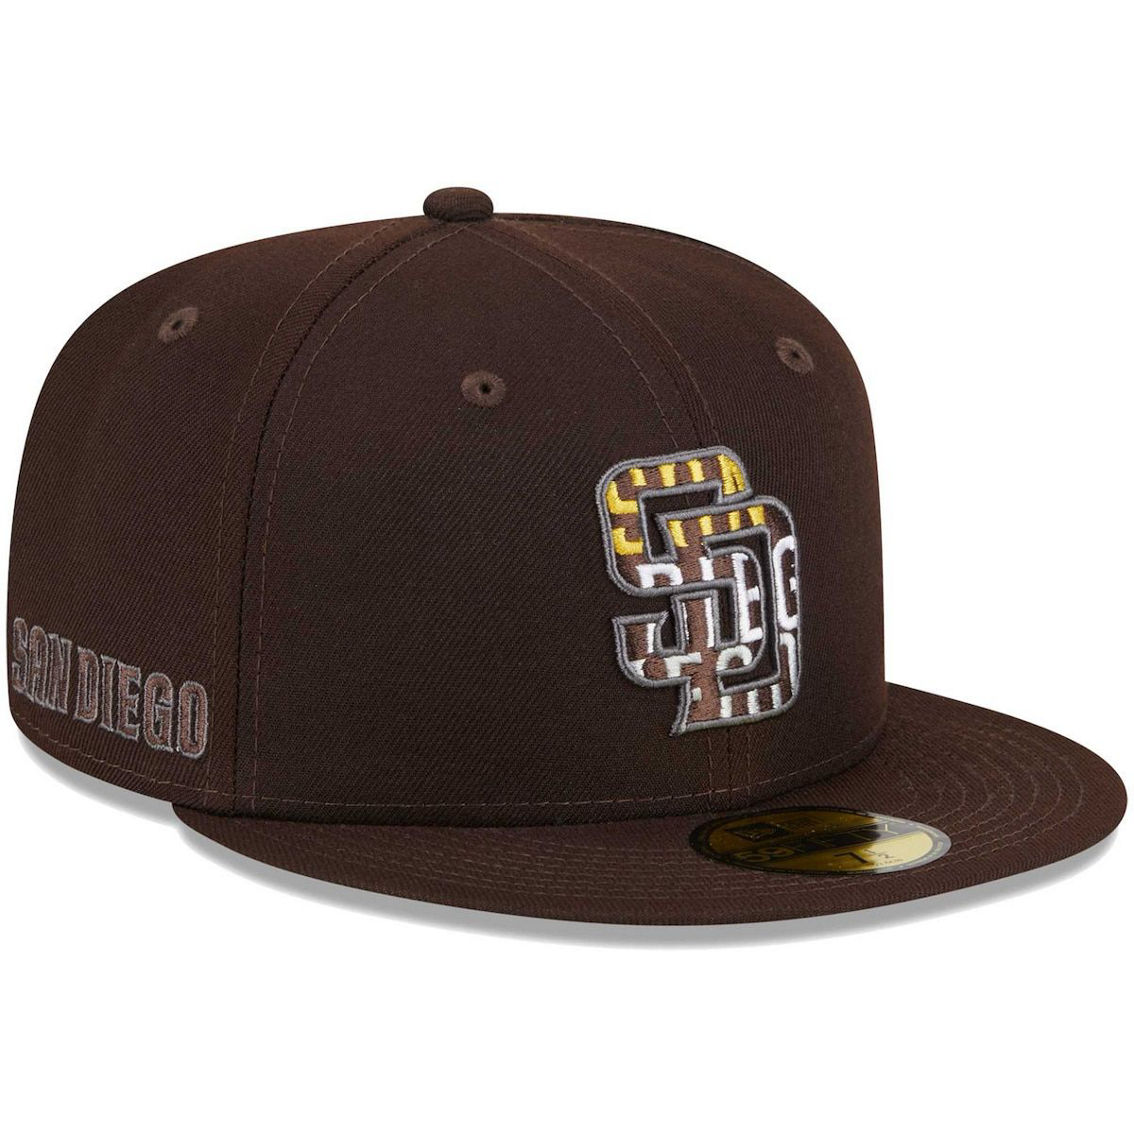 Men's '47 Brown San Diego Padres Team Pride Clean Up Adjustable Hat